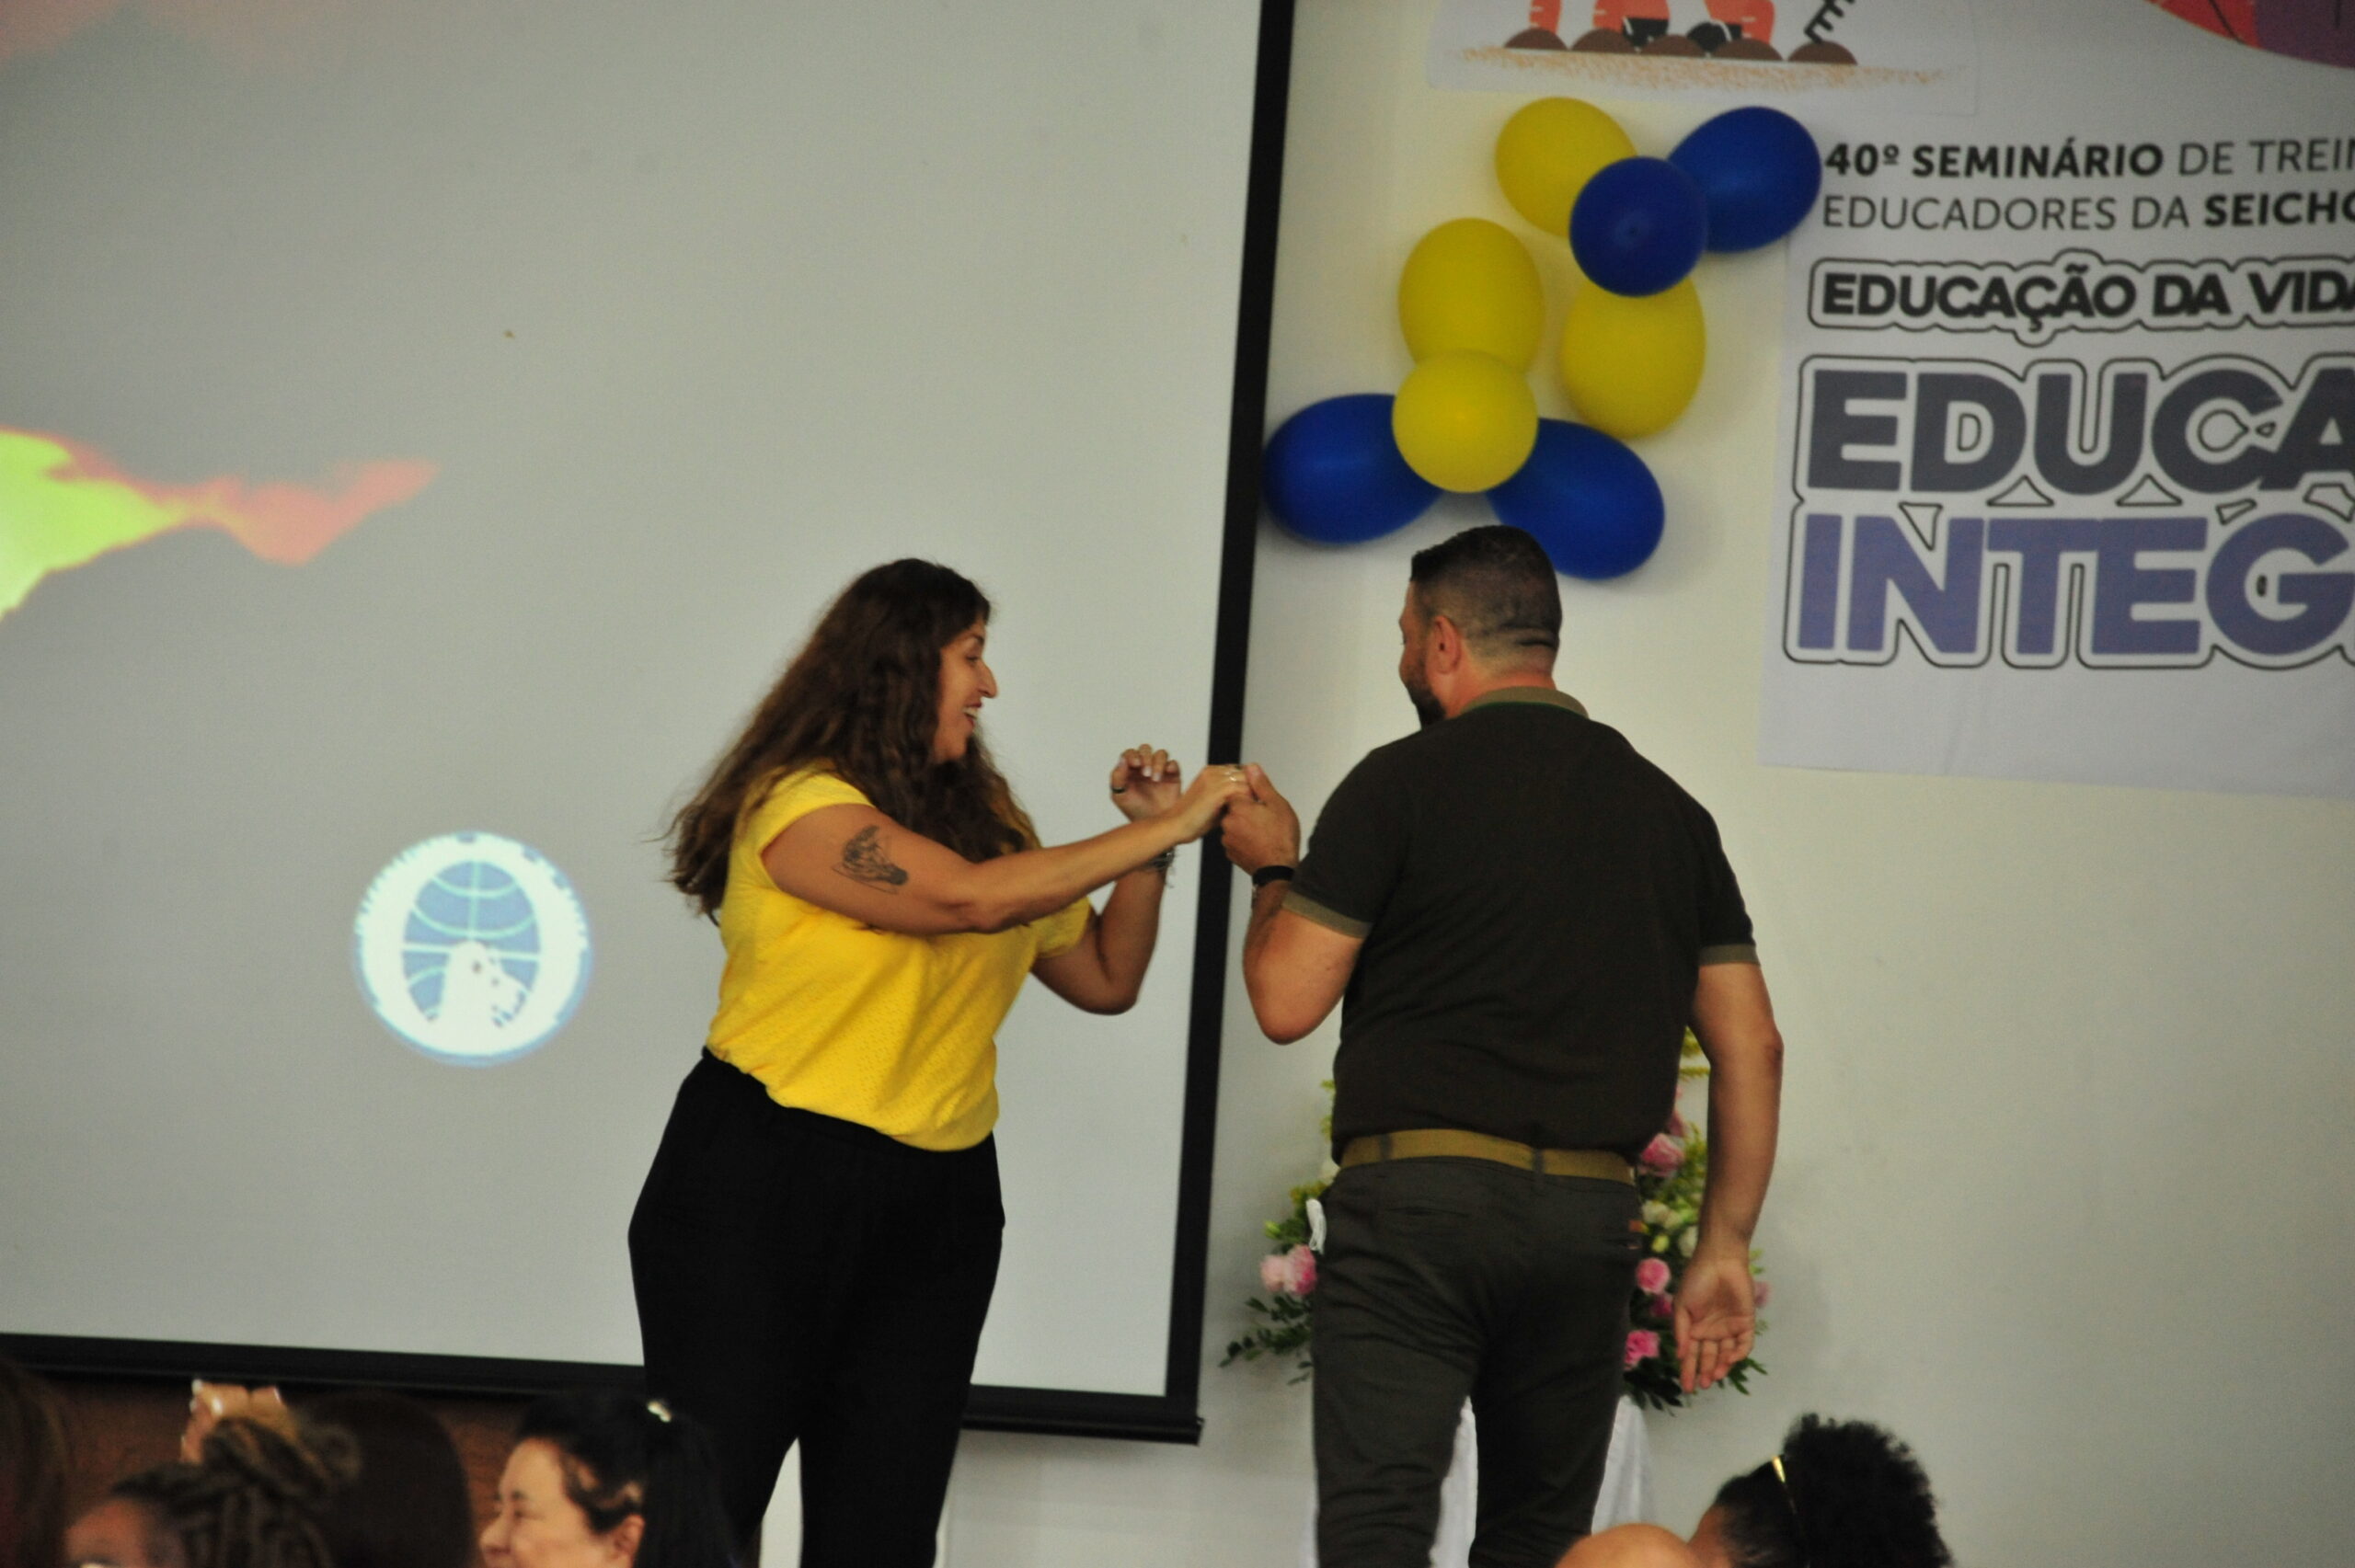 JKM 5326 scaled 40º Seminário de Educadores Estamos em júbilo comemoramos juntos o 40º Seminário de Treinamento Espiritual para Educadores na Academia Sul-Americana da SEICHO-NO-IE DO BRASIL em Ibiúna- SP.